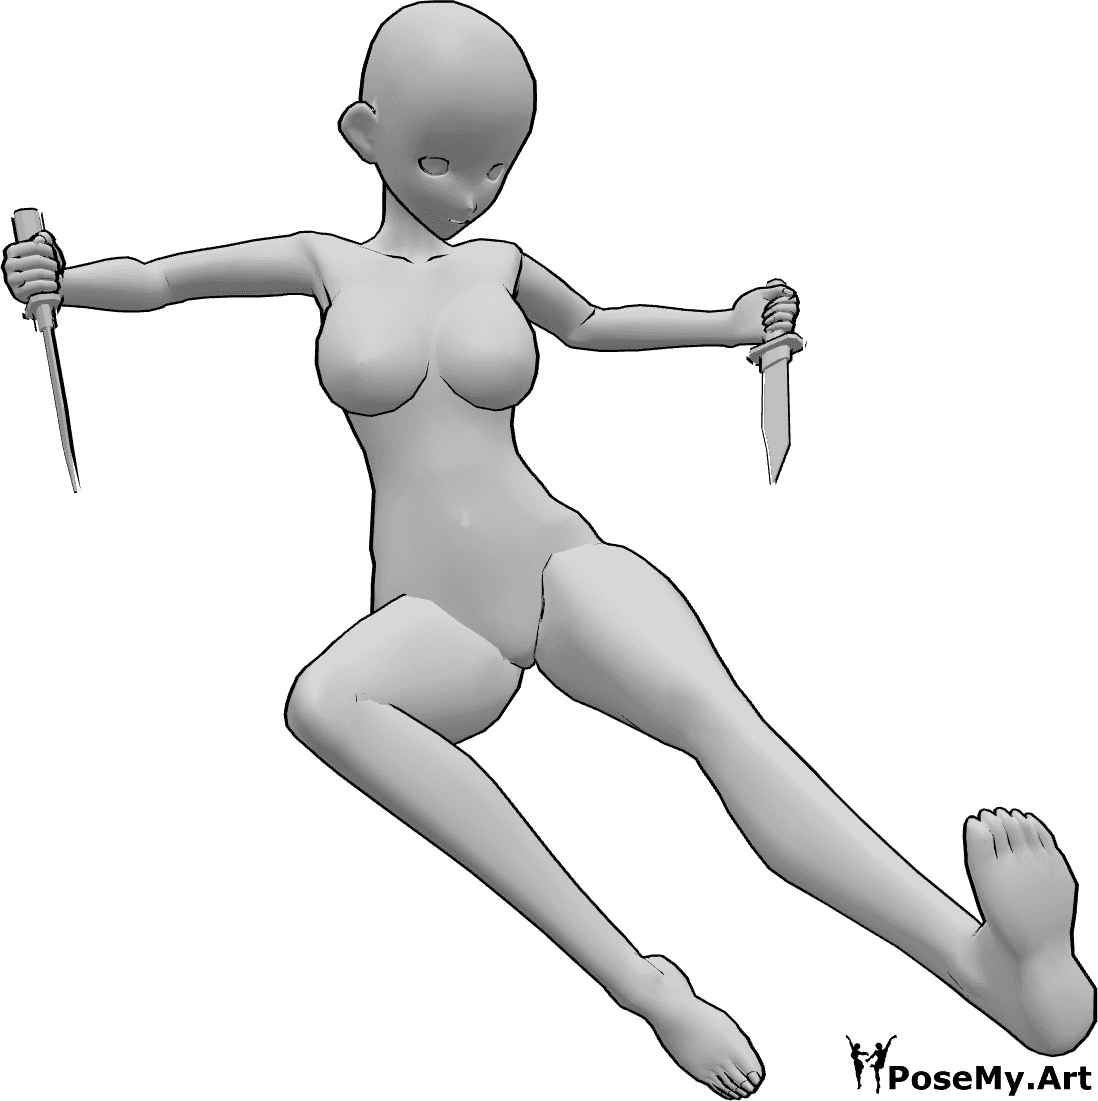 Riferimento alle pose- Posa del coltello a calci in stile anime - Anime femminili saltano e scalciano mentre tengono coltelli in entrambe le mani